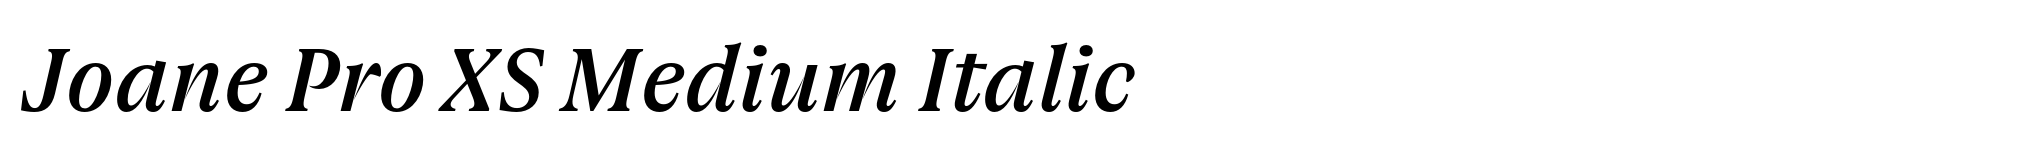 Joane Pro XS Medium Italic image